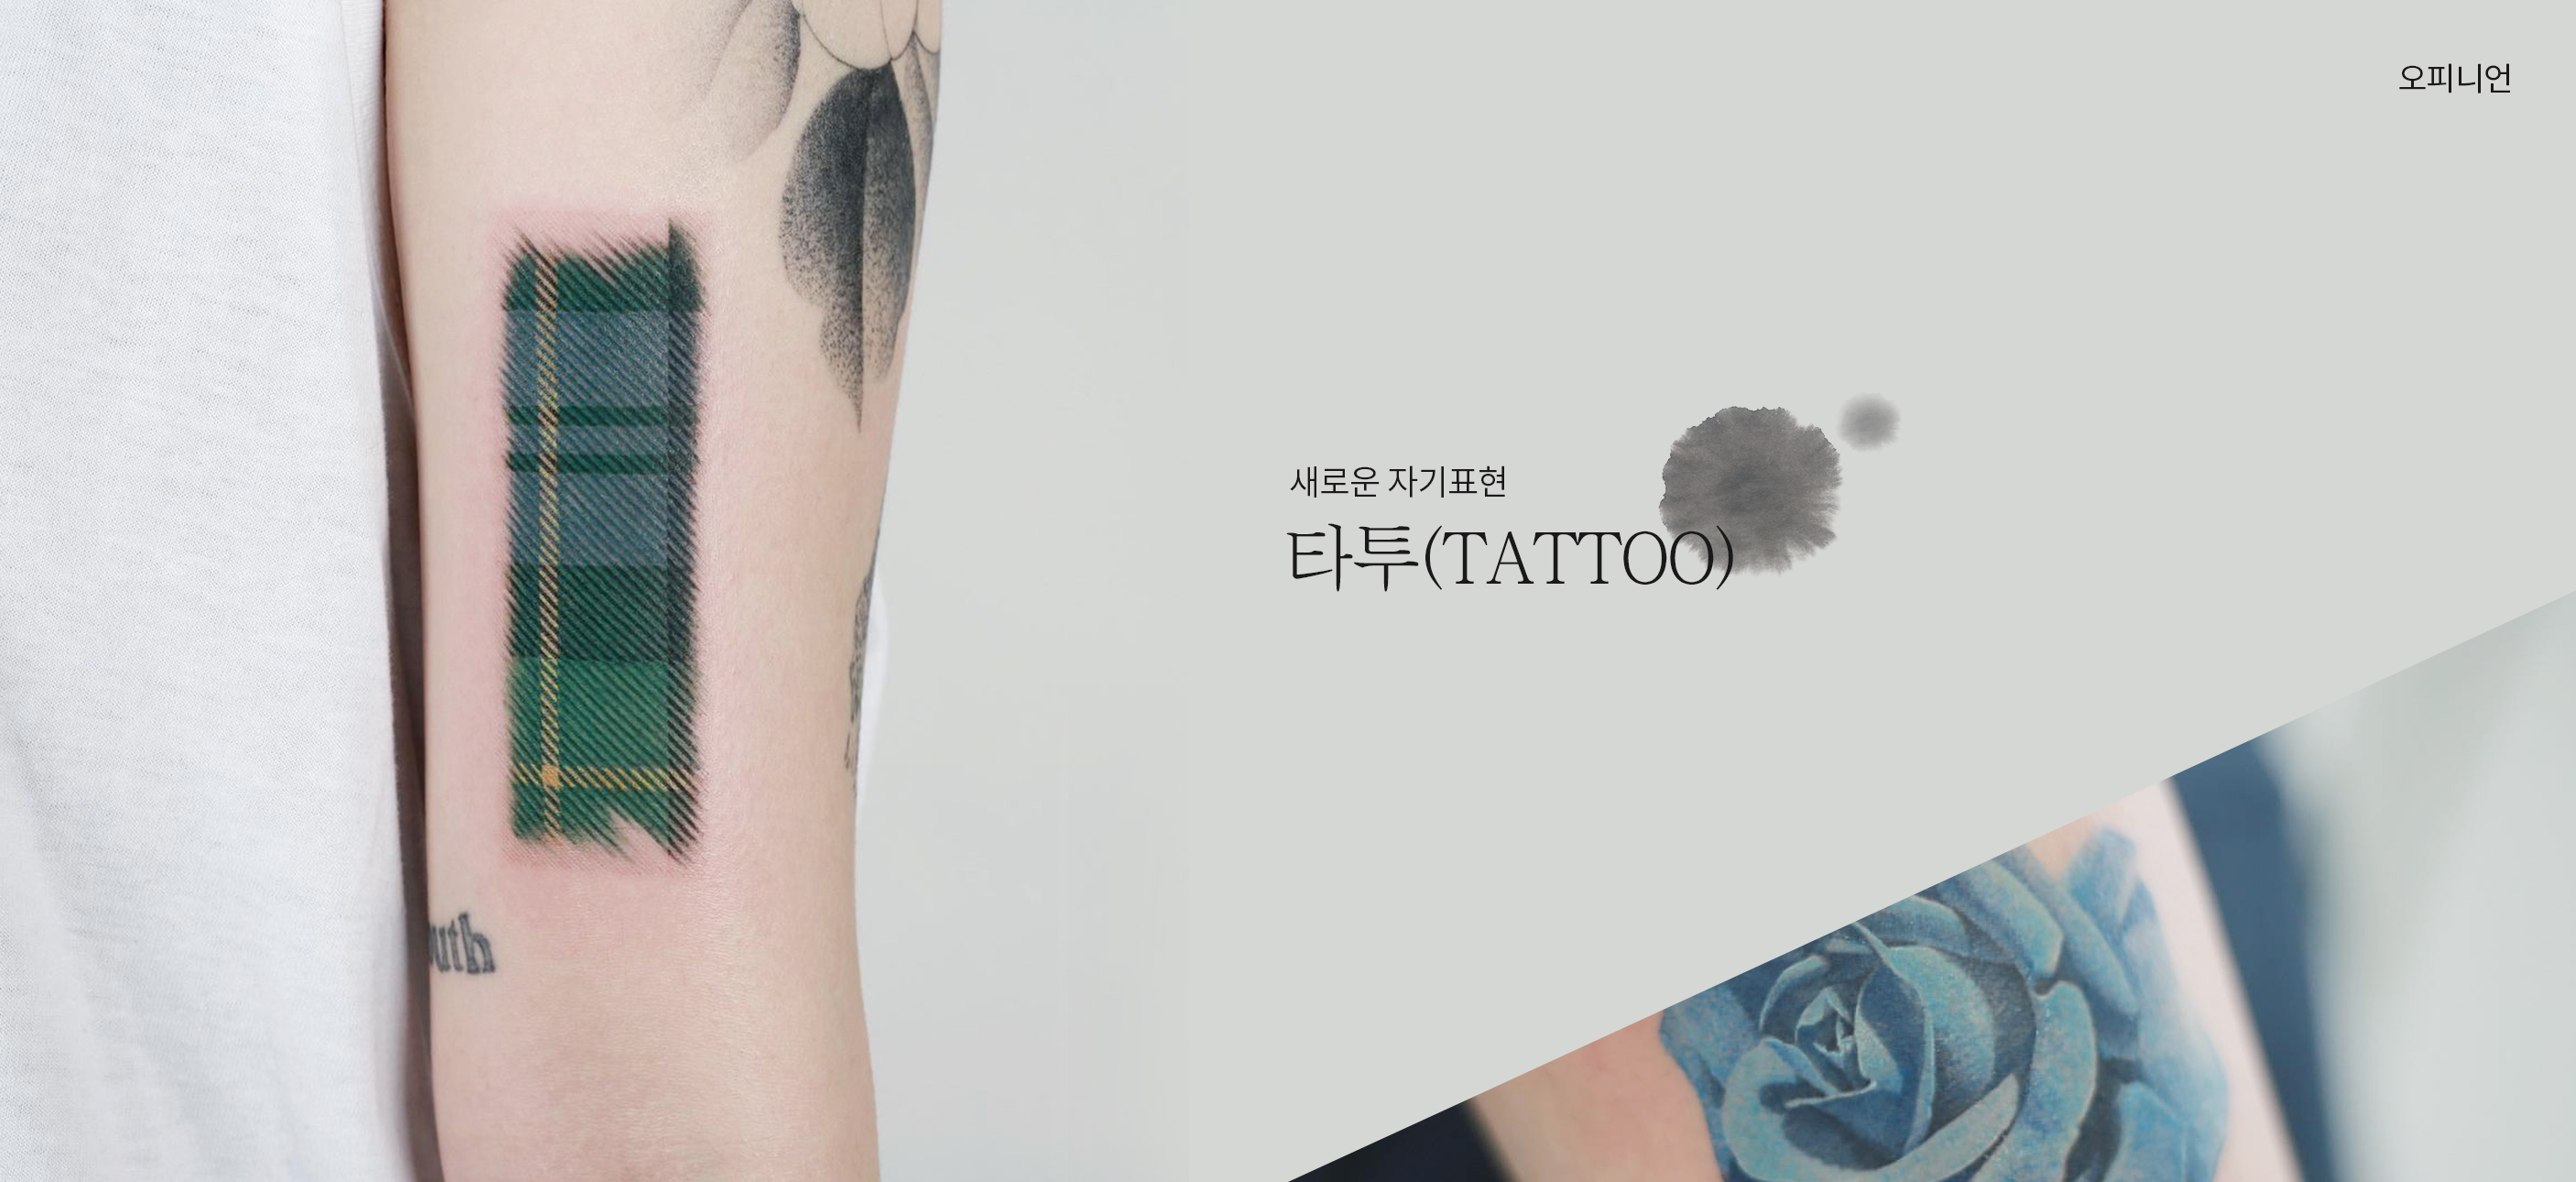 새로운 자기표현, 타투(Tattoo)